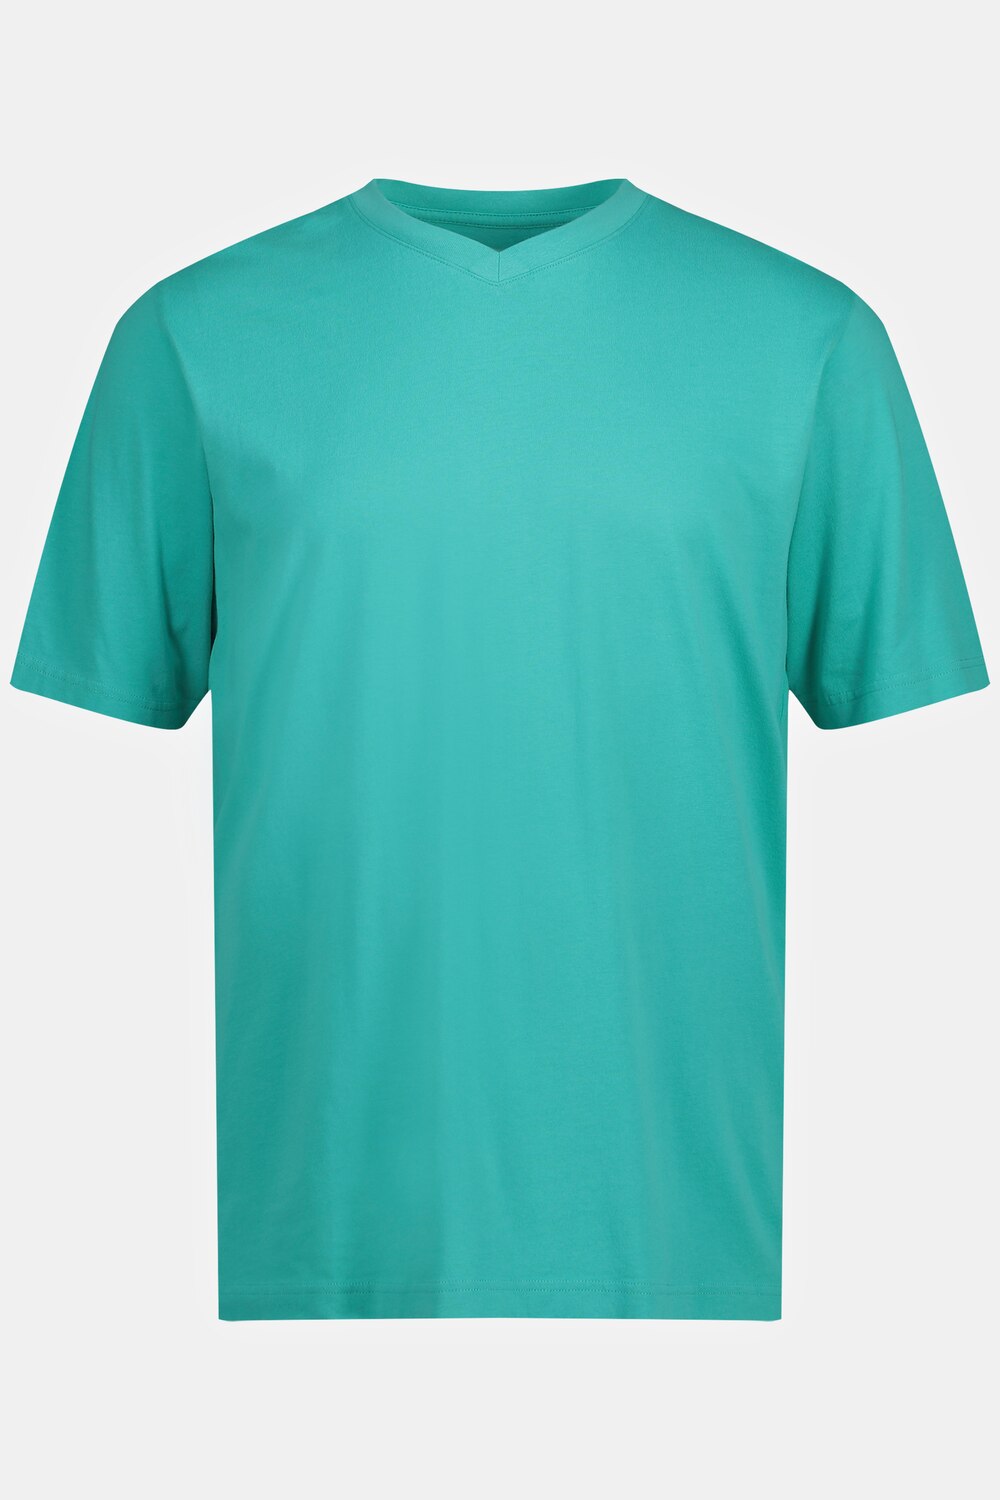 Grote Maten T-shirt, Heren, turquoise, Maat: L, Katoen, JP1880